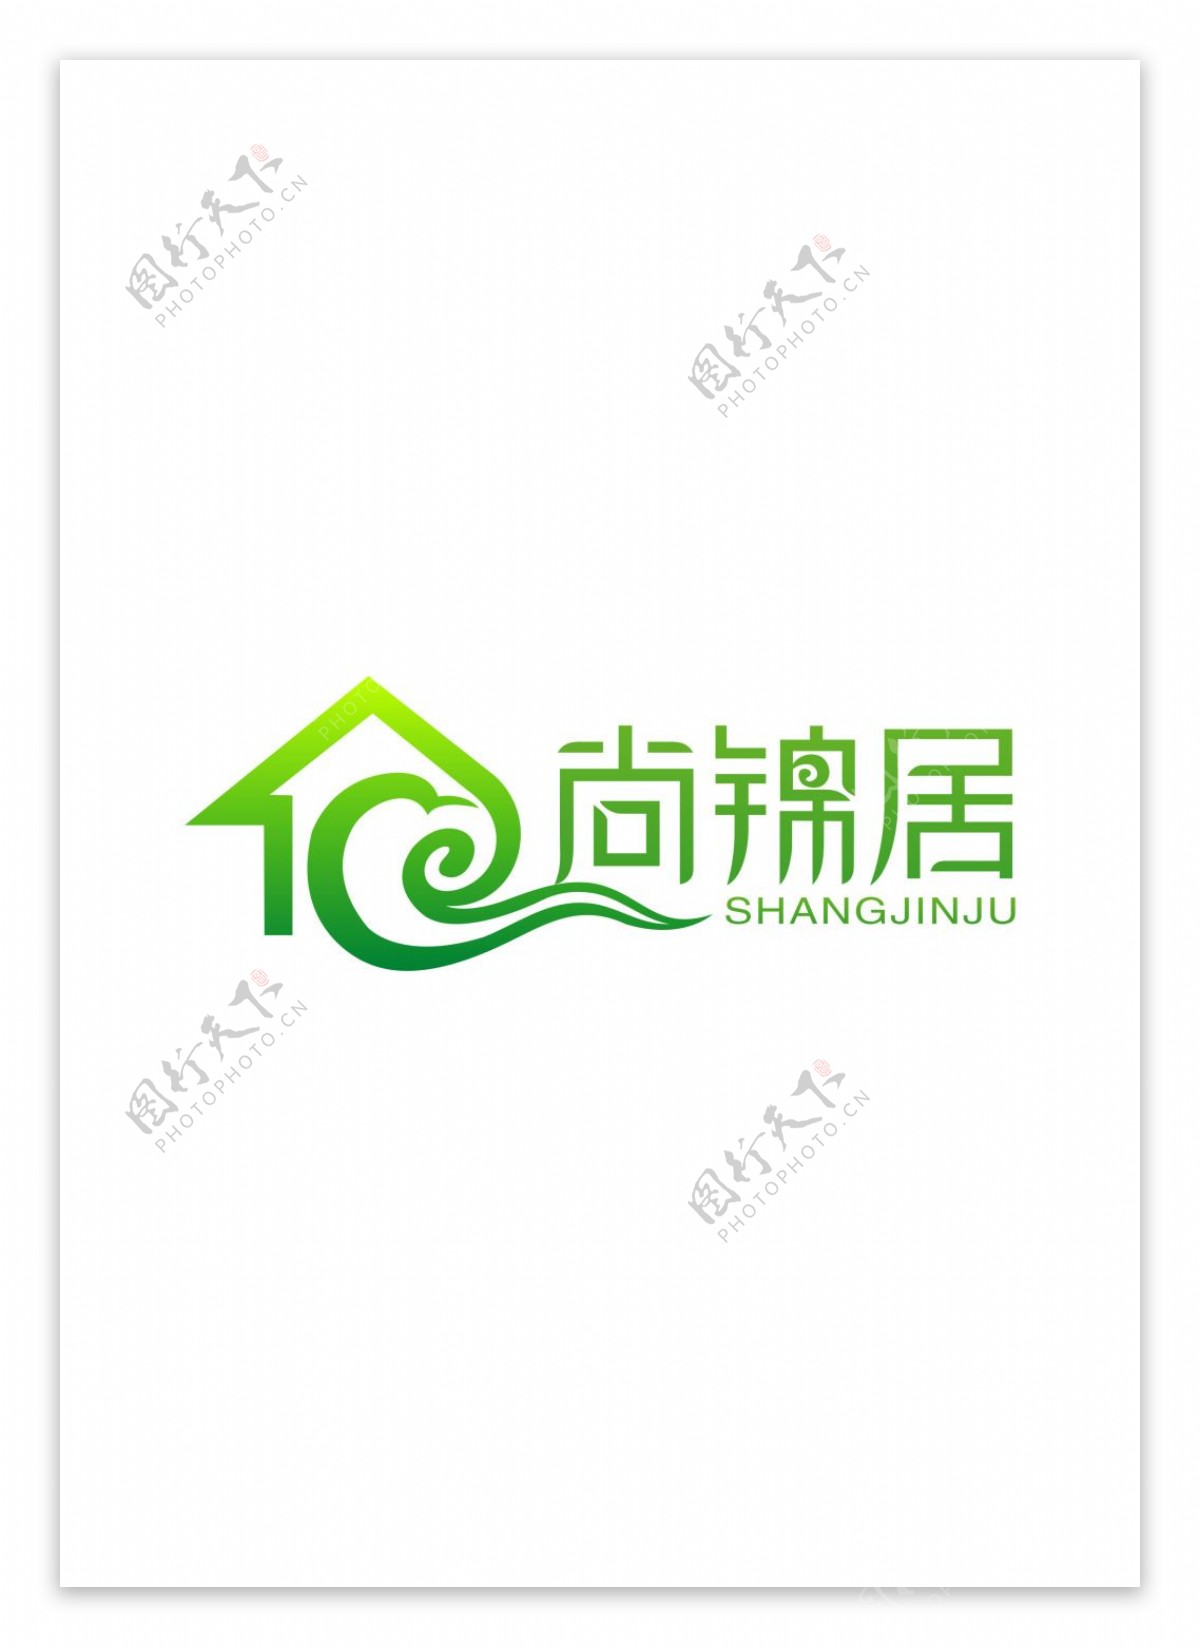 地产商标设计logo图片